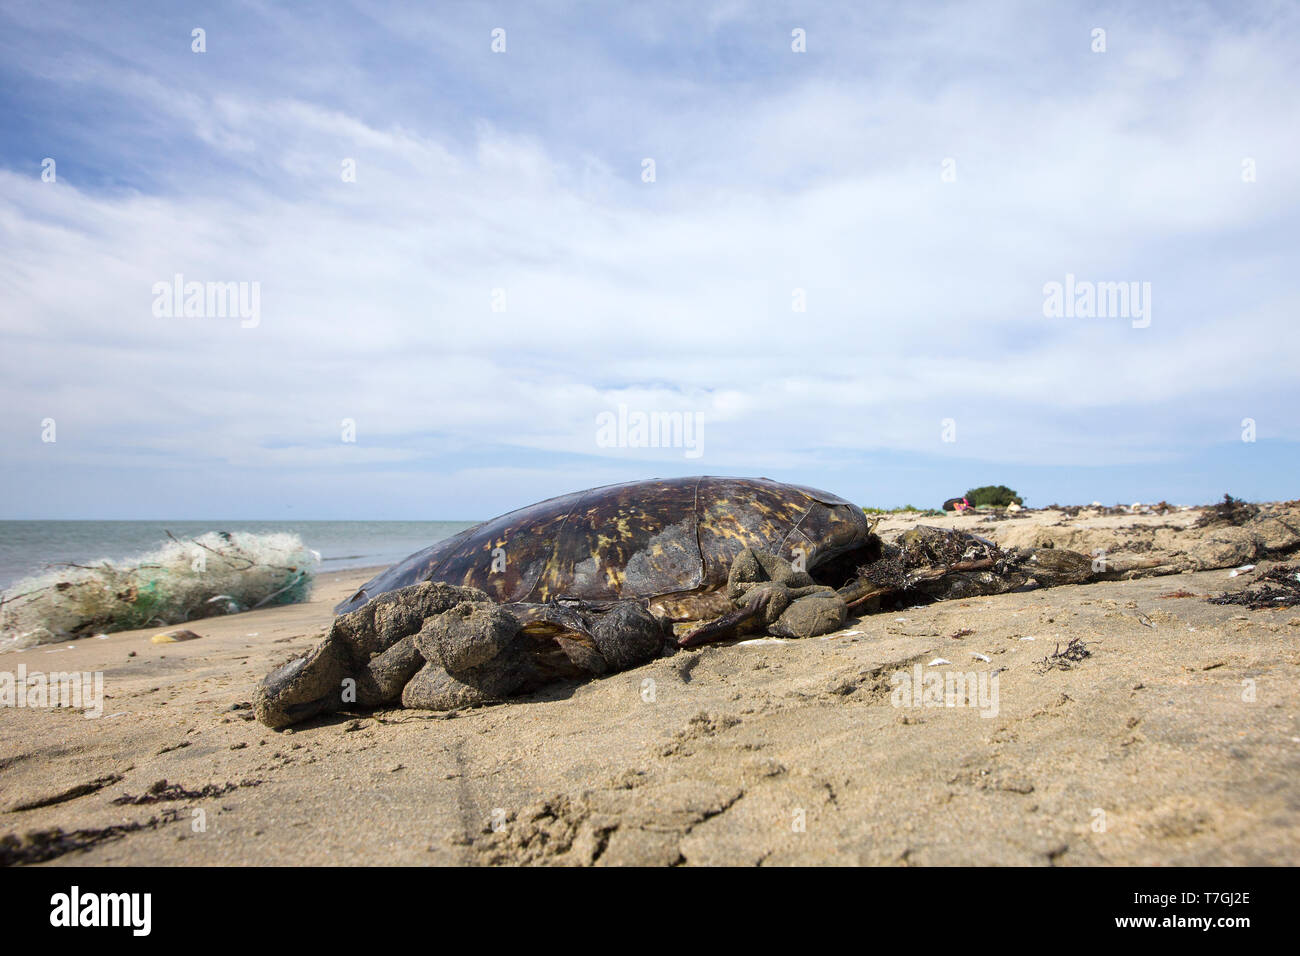 Dead Sea turtle gewaschen am Strand Stockfoto